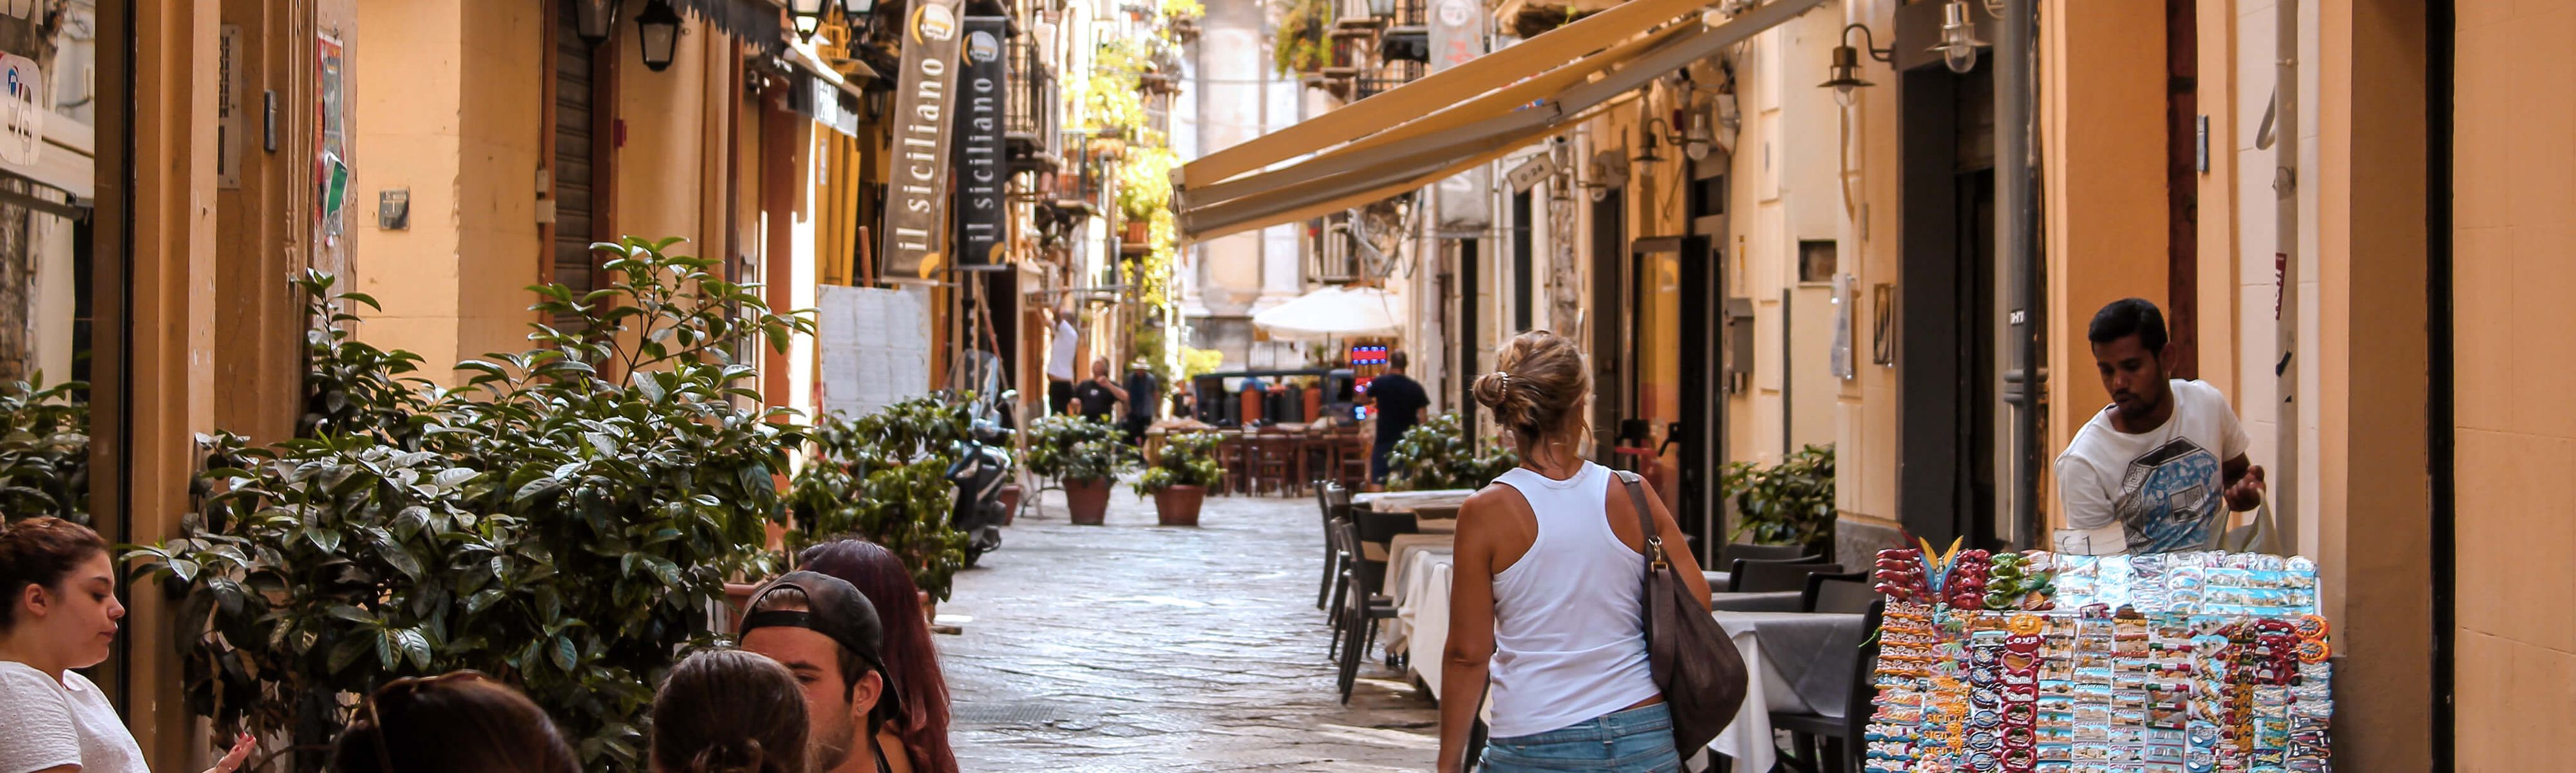 italian people walking down a street in italy